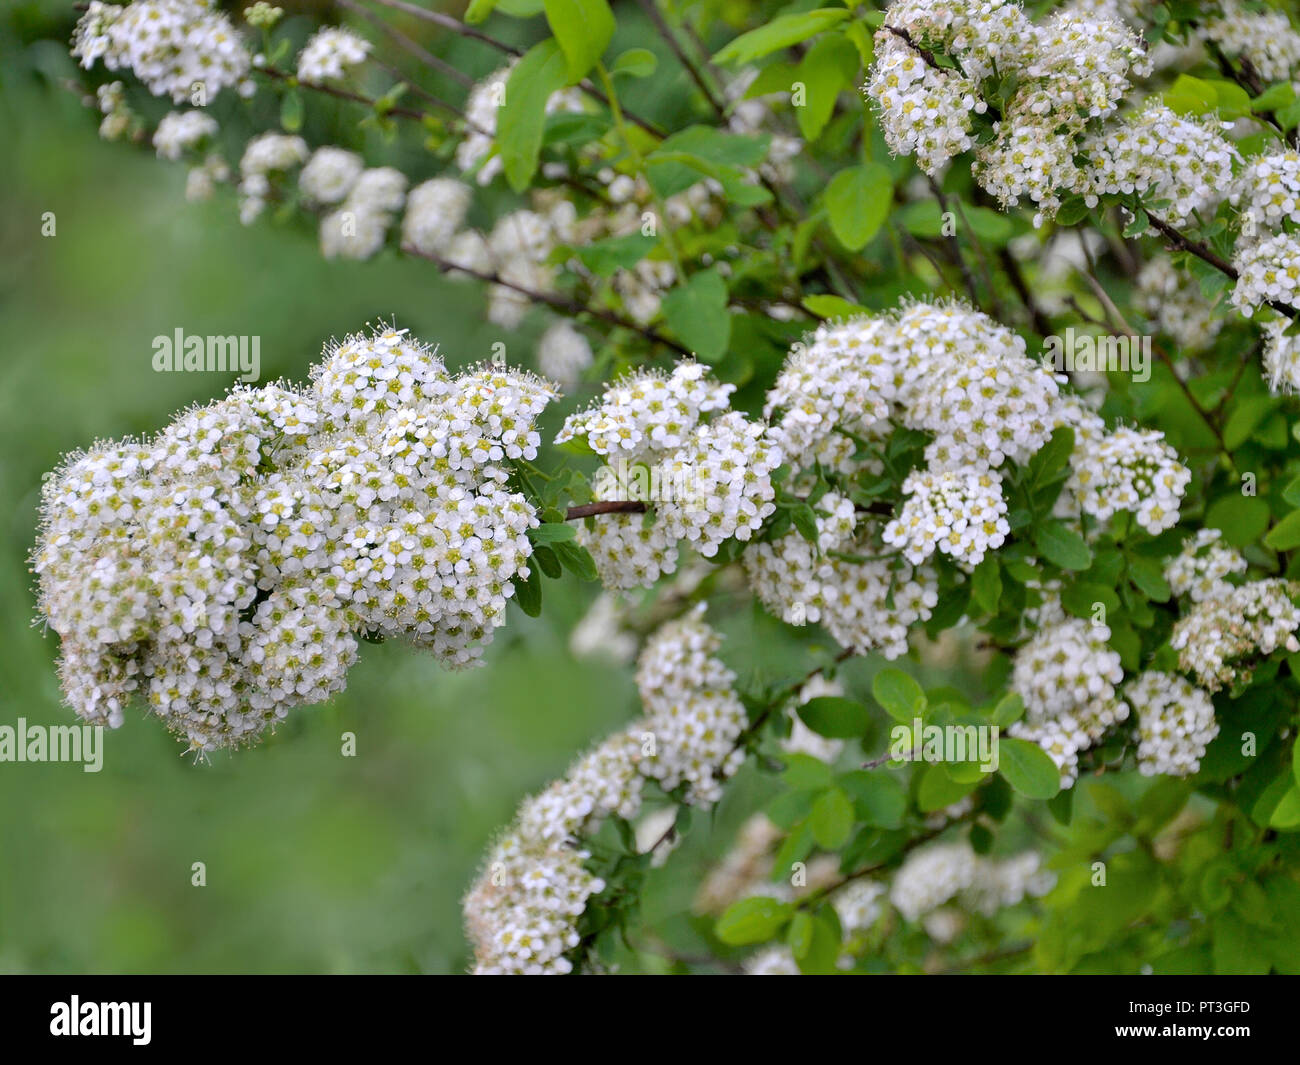 Spirea blühenden Zweig mit zarten kleinen weißen Blüten - zierpflanzen Für die Landschaftsgestaltung der Park oder Garten. Strauch blüht im Frühling. Selectiv foc Stockfoto